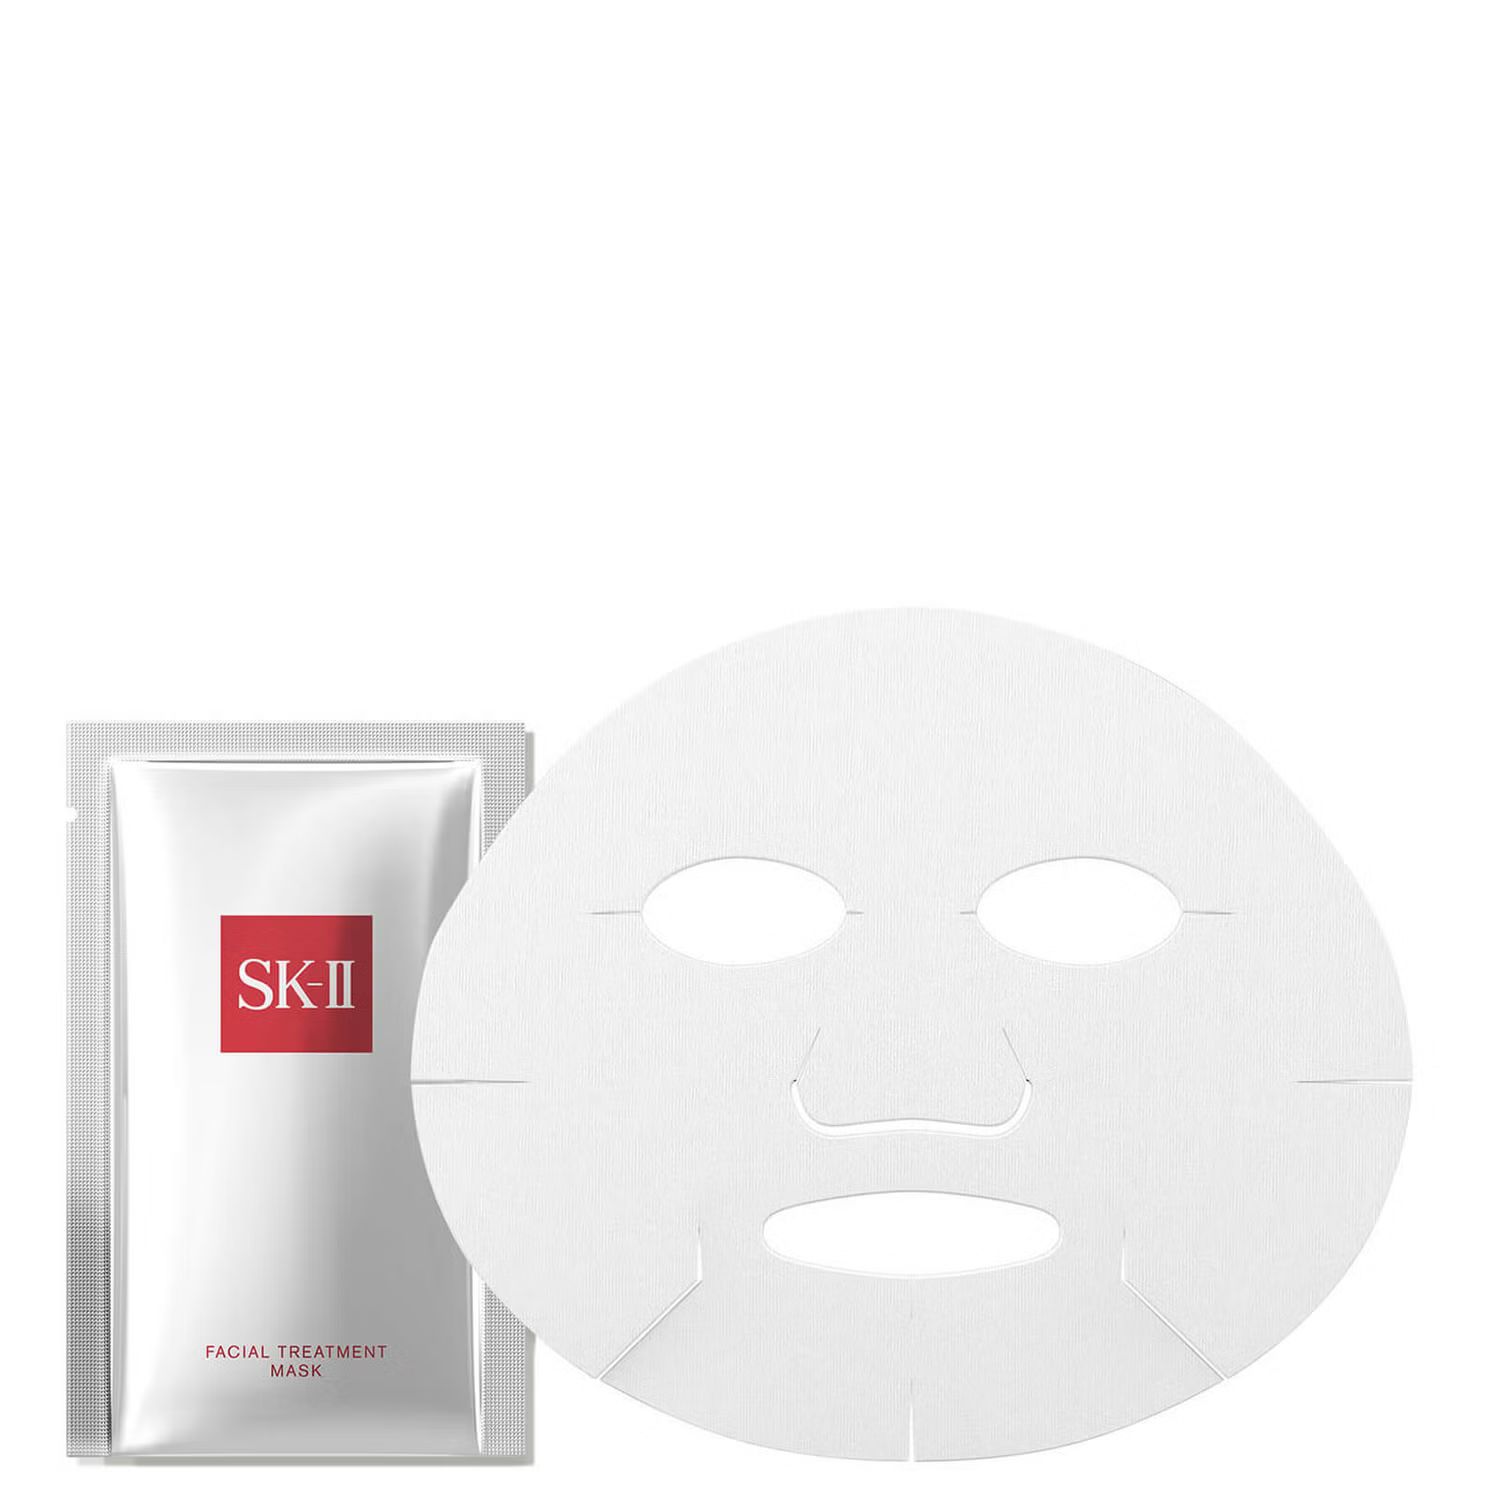 SK-II Facial Treatment Mask (6 count) | Dermstore (US)